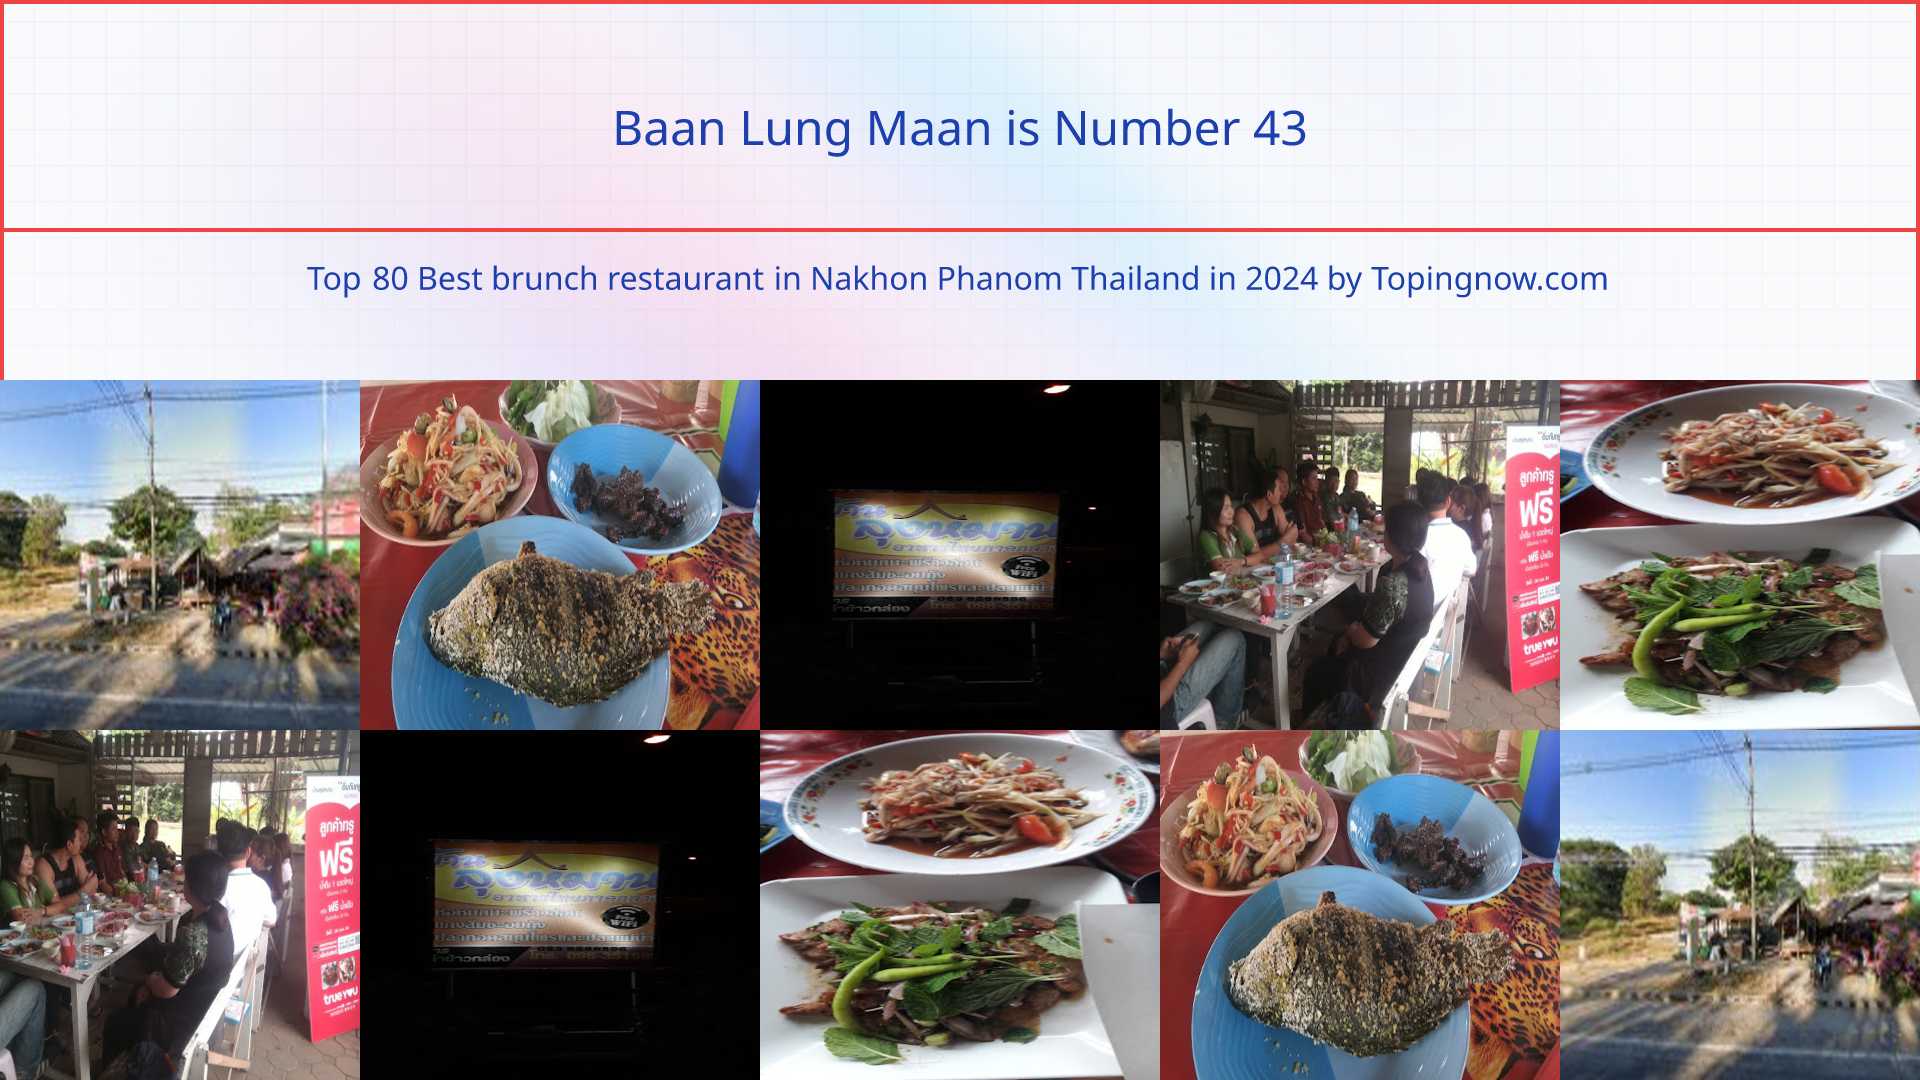 Baan Lung Maan: Top 80 Best brunch restaurant in Nakhon Phanom Thailand in 2024